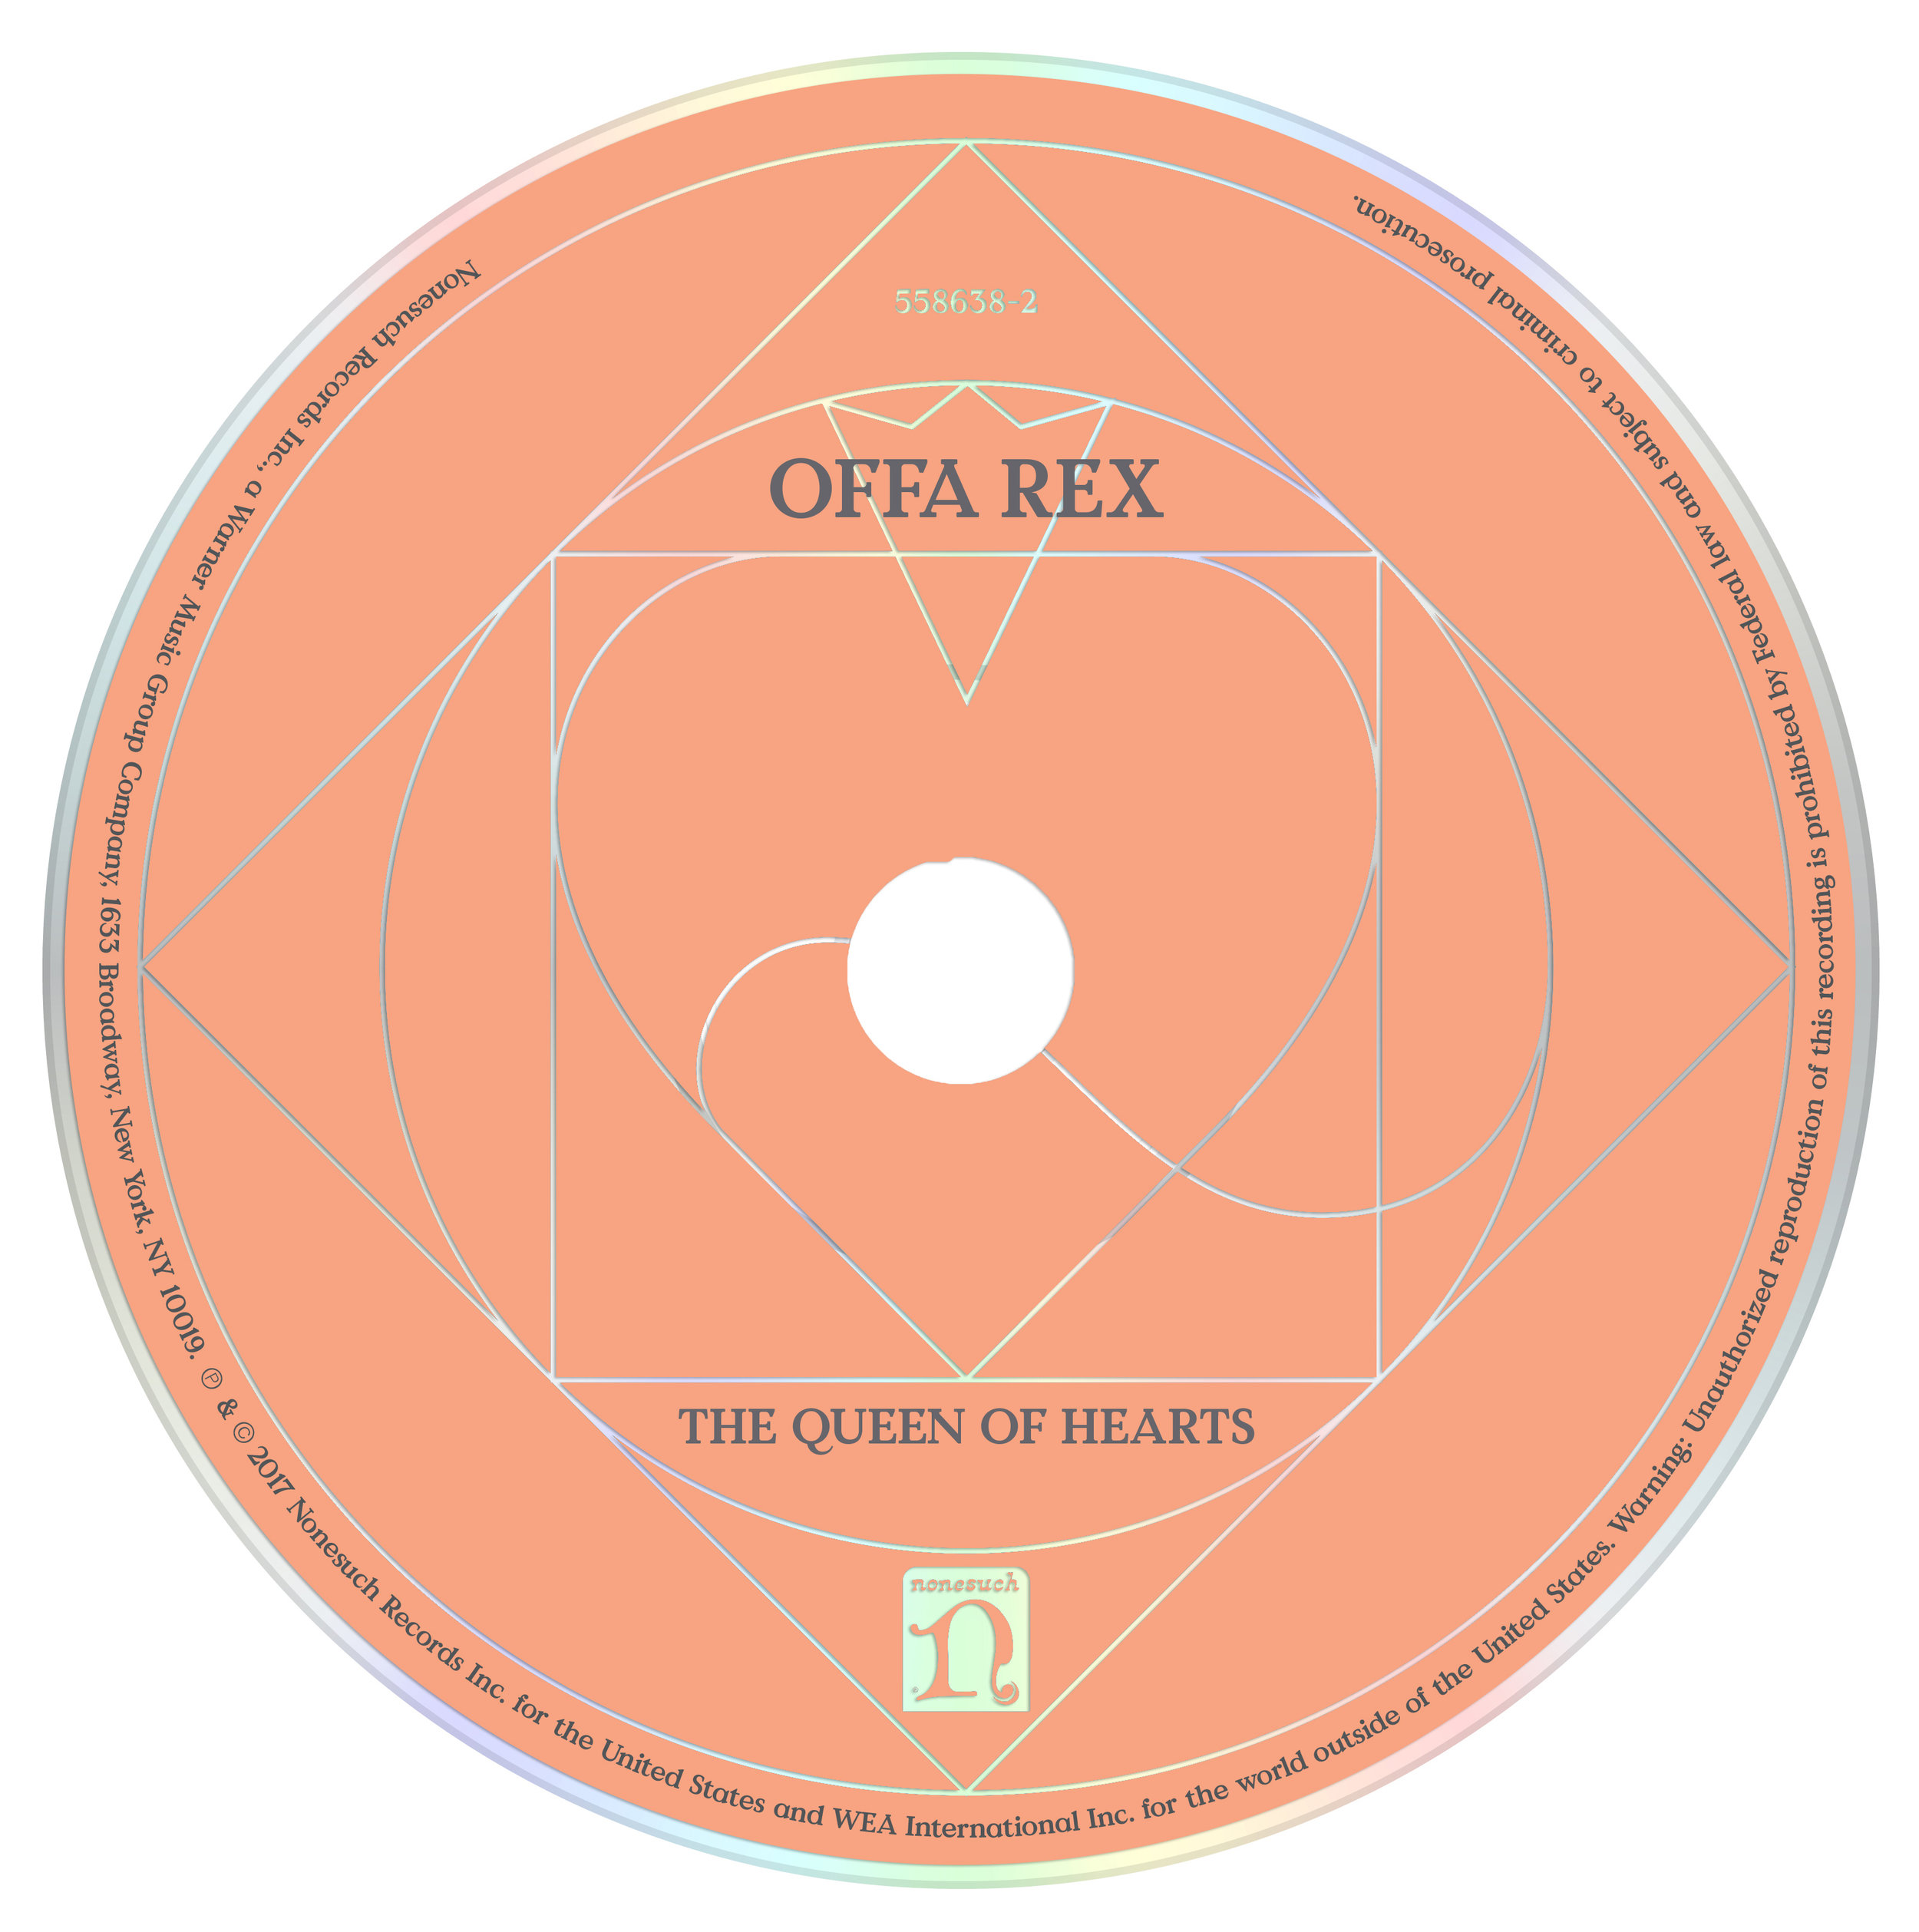 OffaRex_CD.jpg